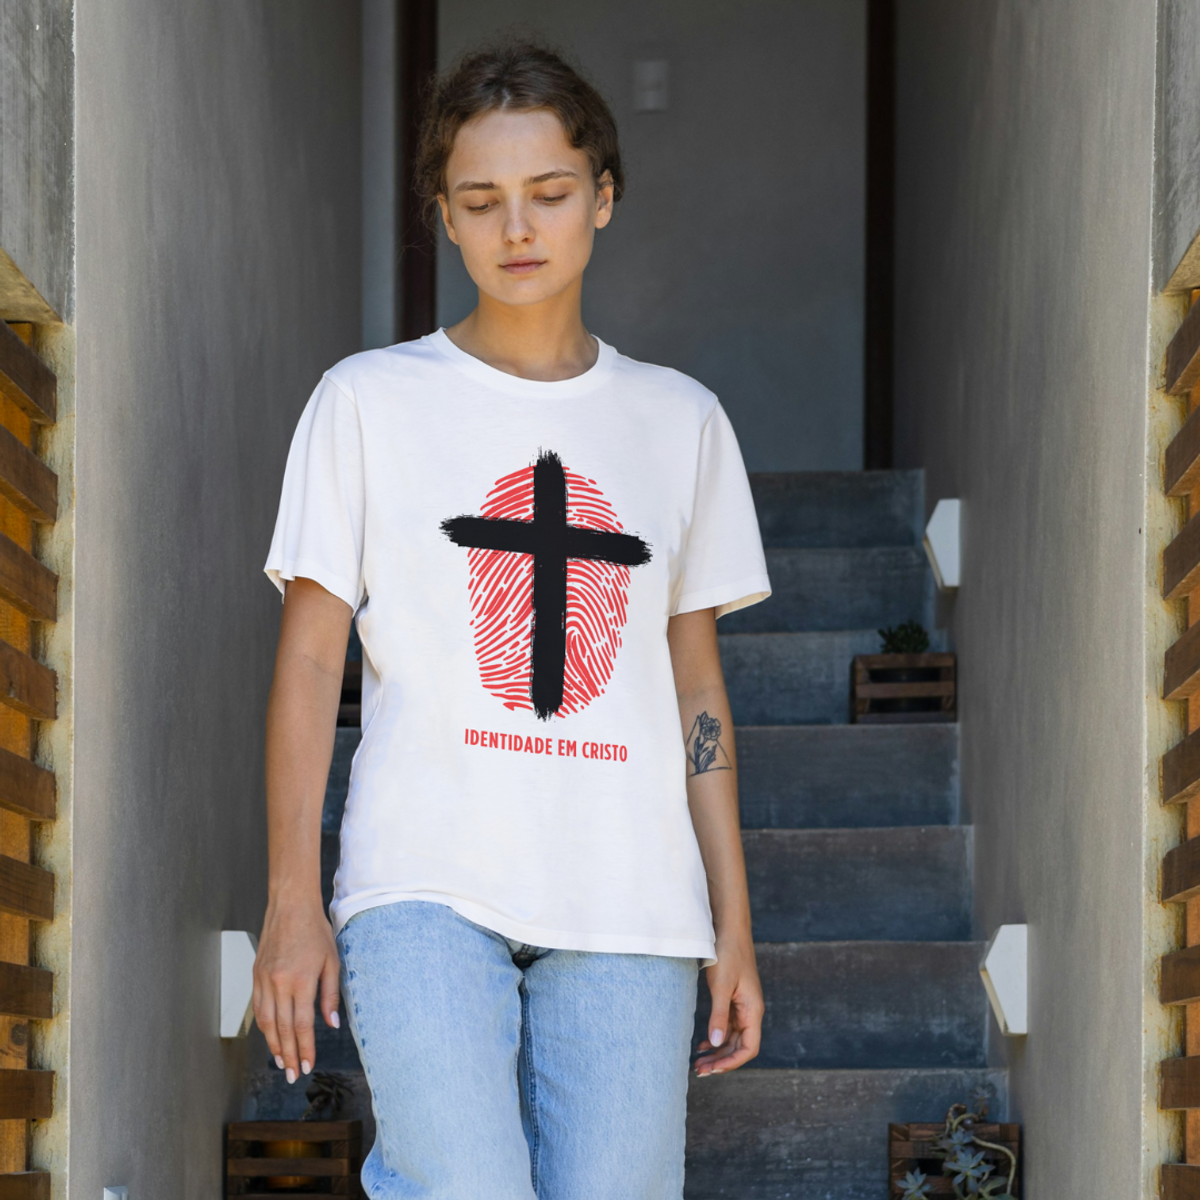 Nome do produto: Camiseta T-Shirt Quality Identidade em Cristo - Unissex